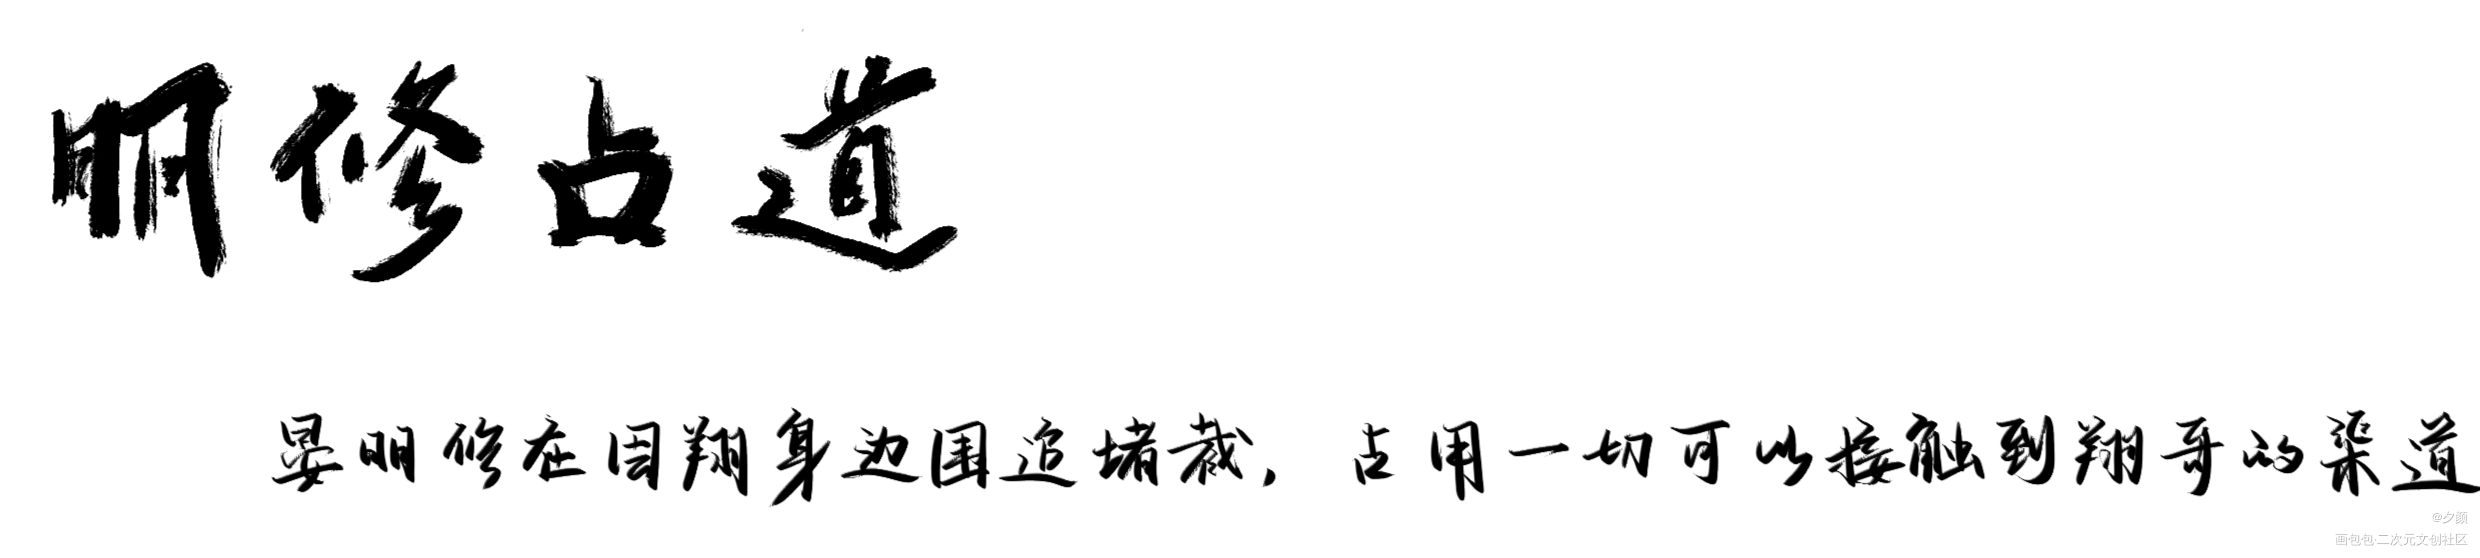 188成语小课堂_188男团周翔晏明修字体设计写字见字如晤板写绘画作品